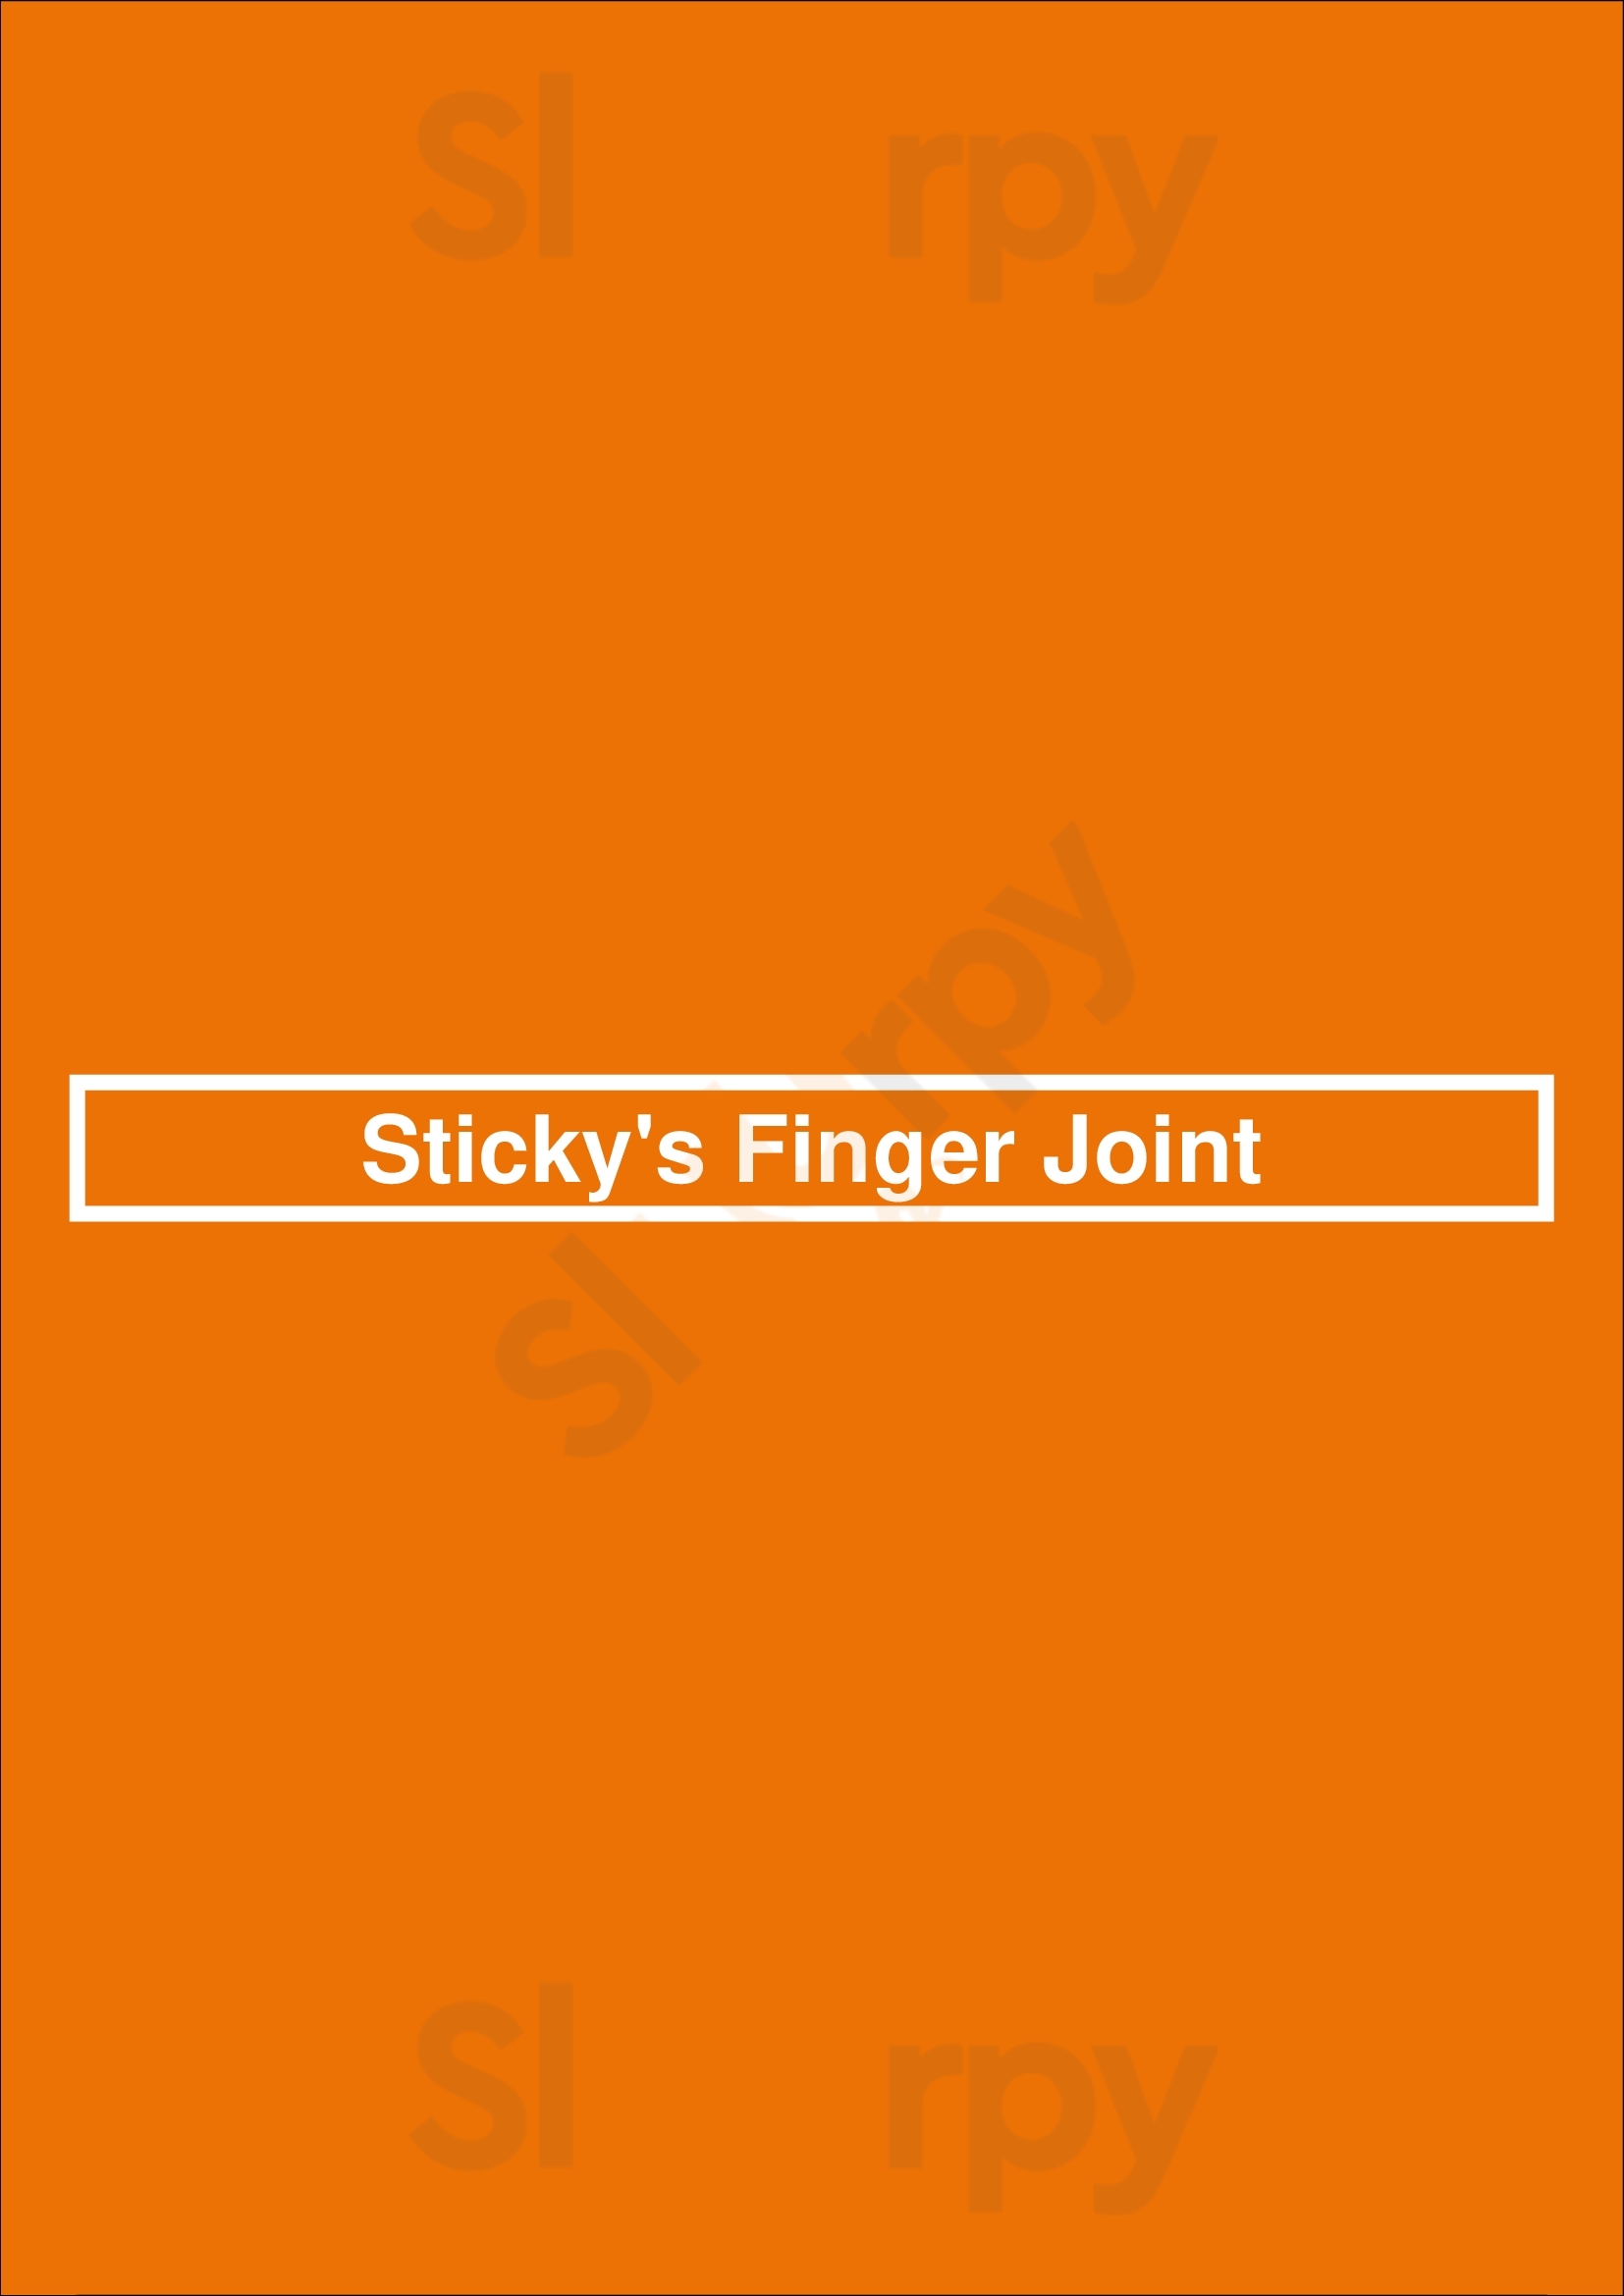 Sticky's Finger Joint New York City Menu - 1